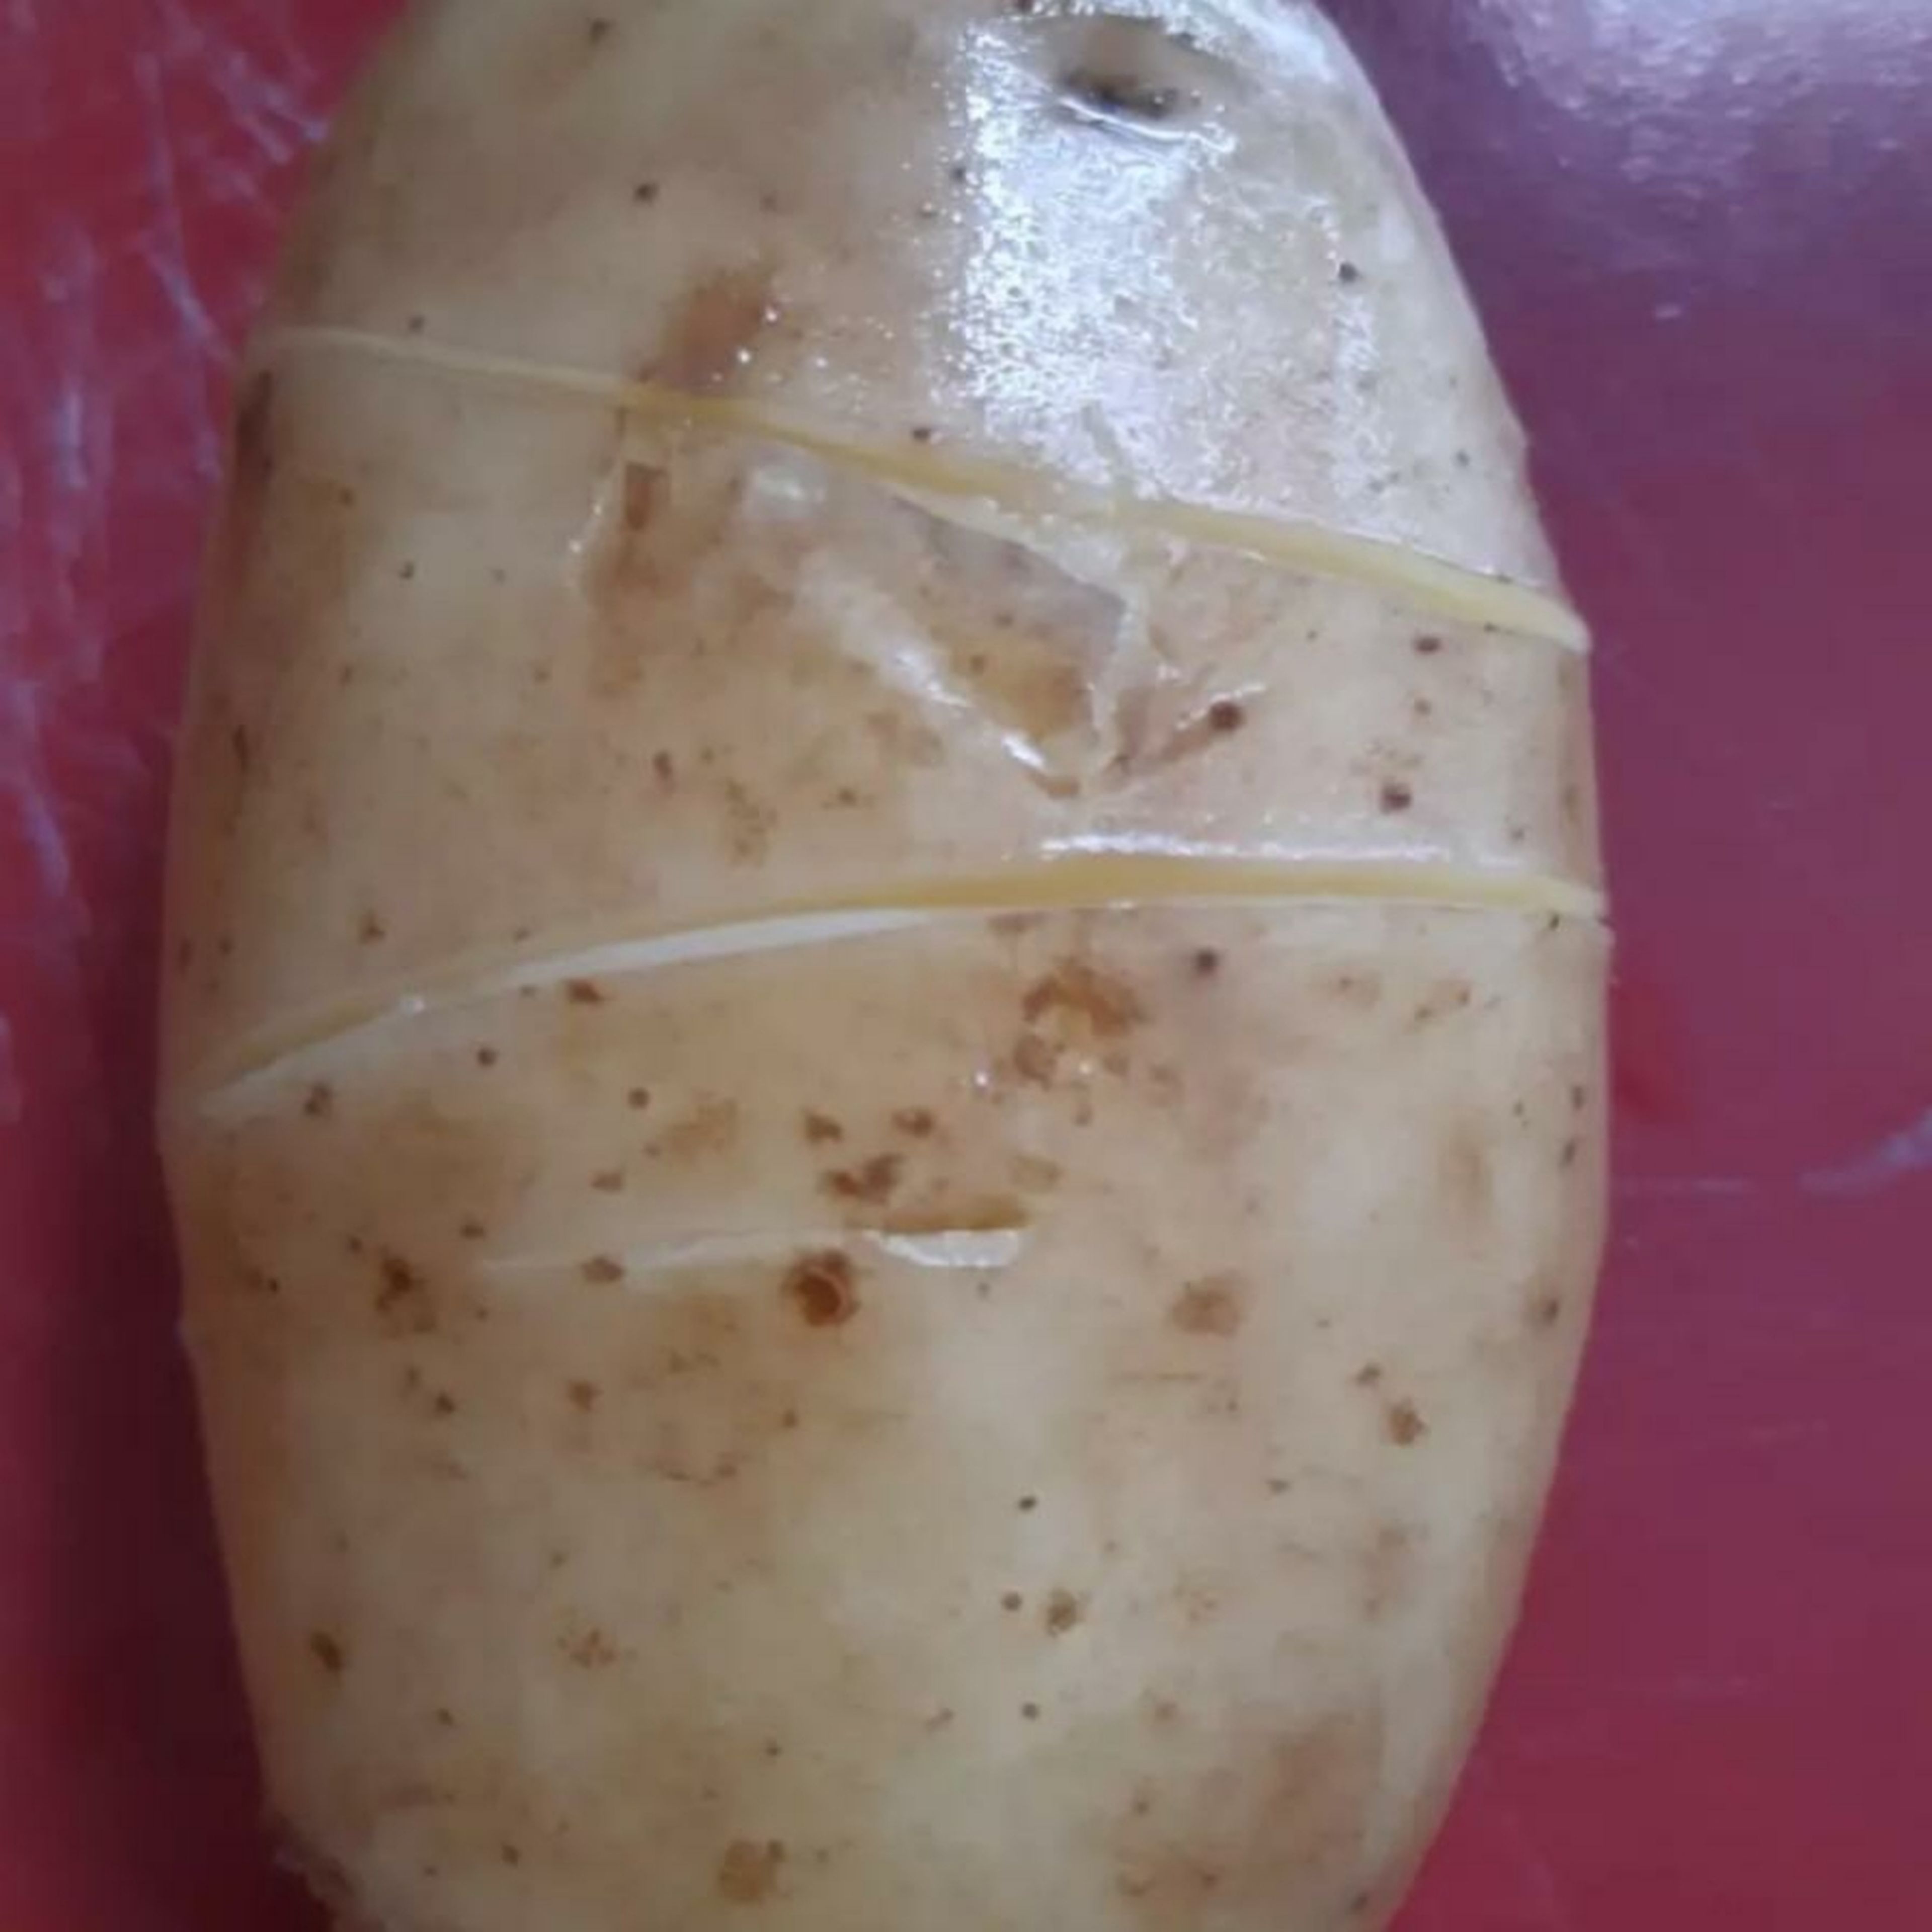 Kartoffeln waschen. Ich ritze die die Kartoffeln um die Schale herum ein, um sie nach dem Kochen leichter schälen zu können (s. Foto). Kartoffeln in Wasser zum Kochen bringen. Die Kartoffeln abkühlen lassen. Eventuell in kaltes Wasser legen.